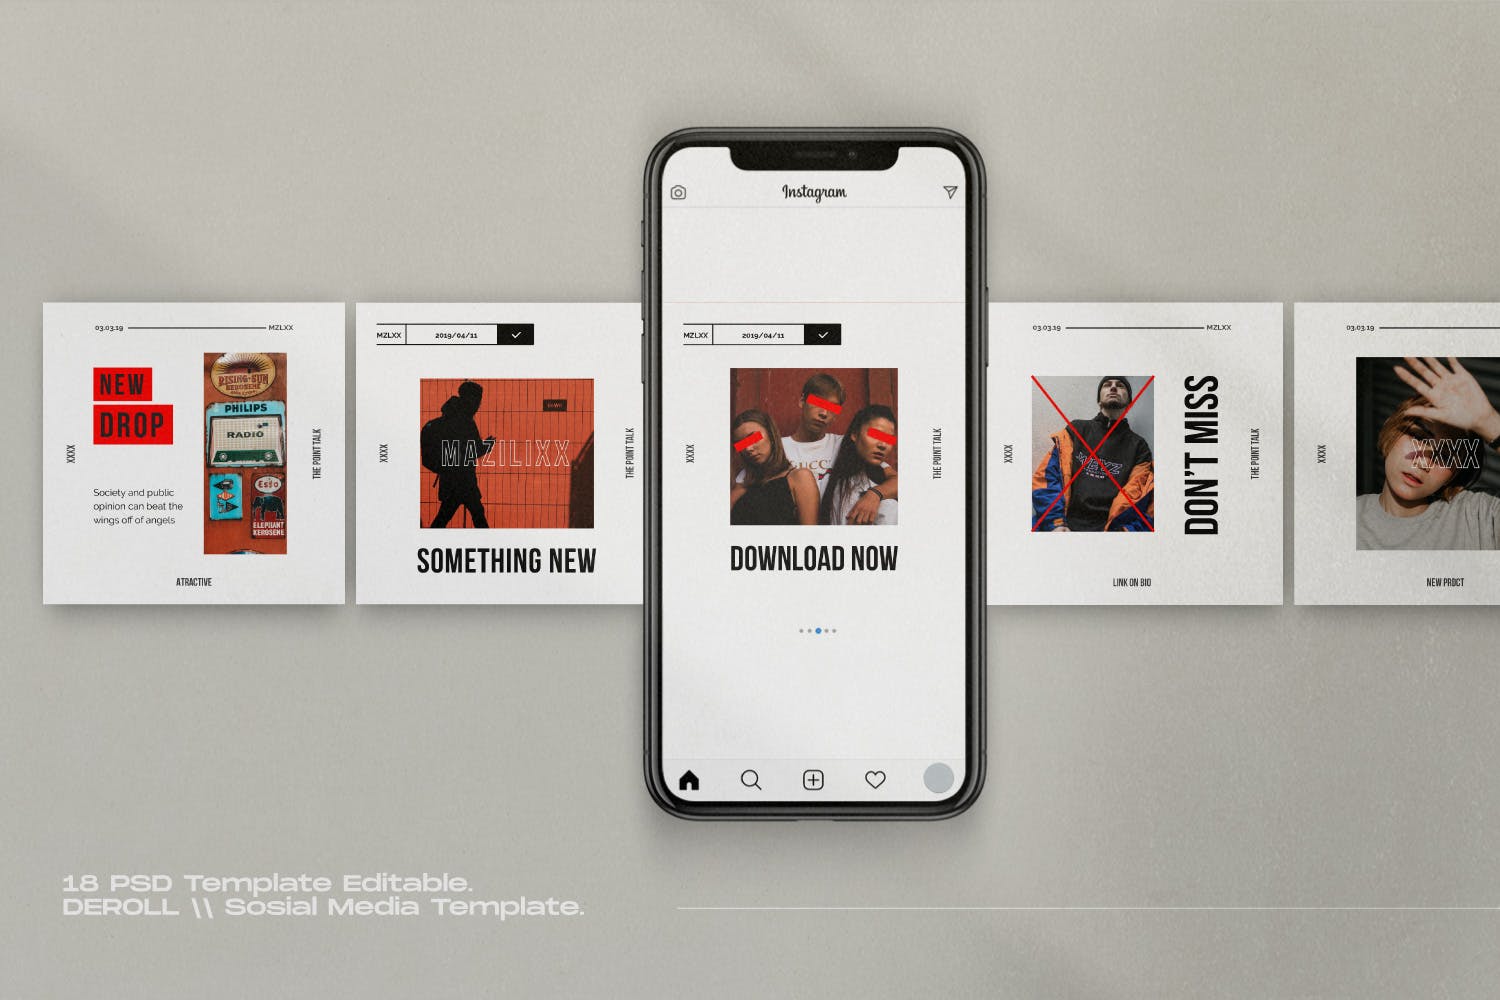 时尚潮流主题Instagram贴图&品牌故事设计素材包v1 Mazilixx Pack 1 – Instagram Social Media + Stories插图(2)